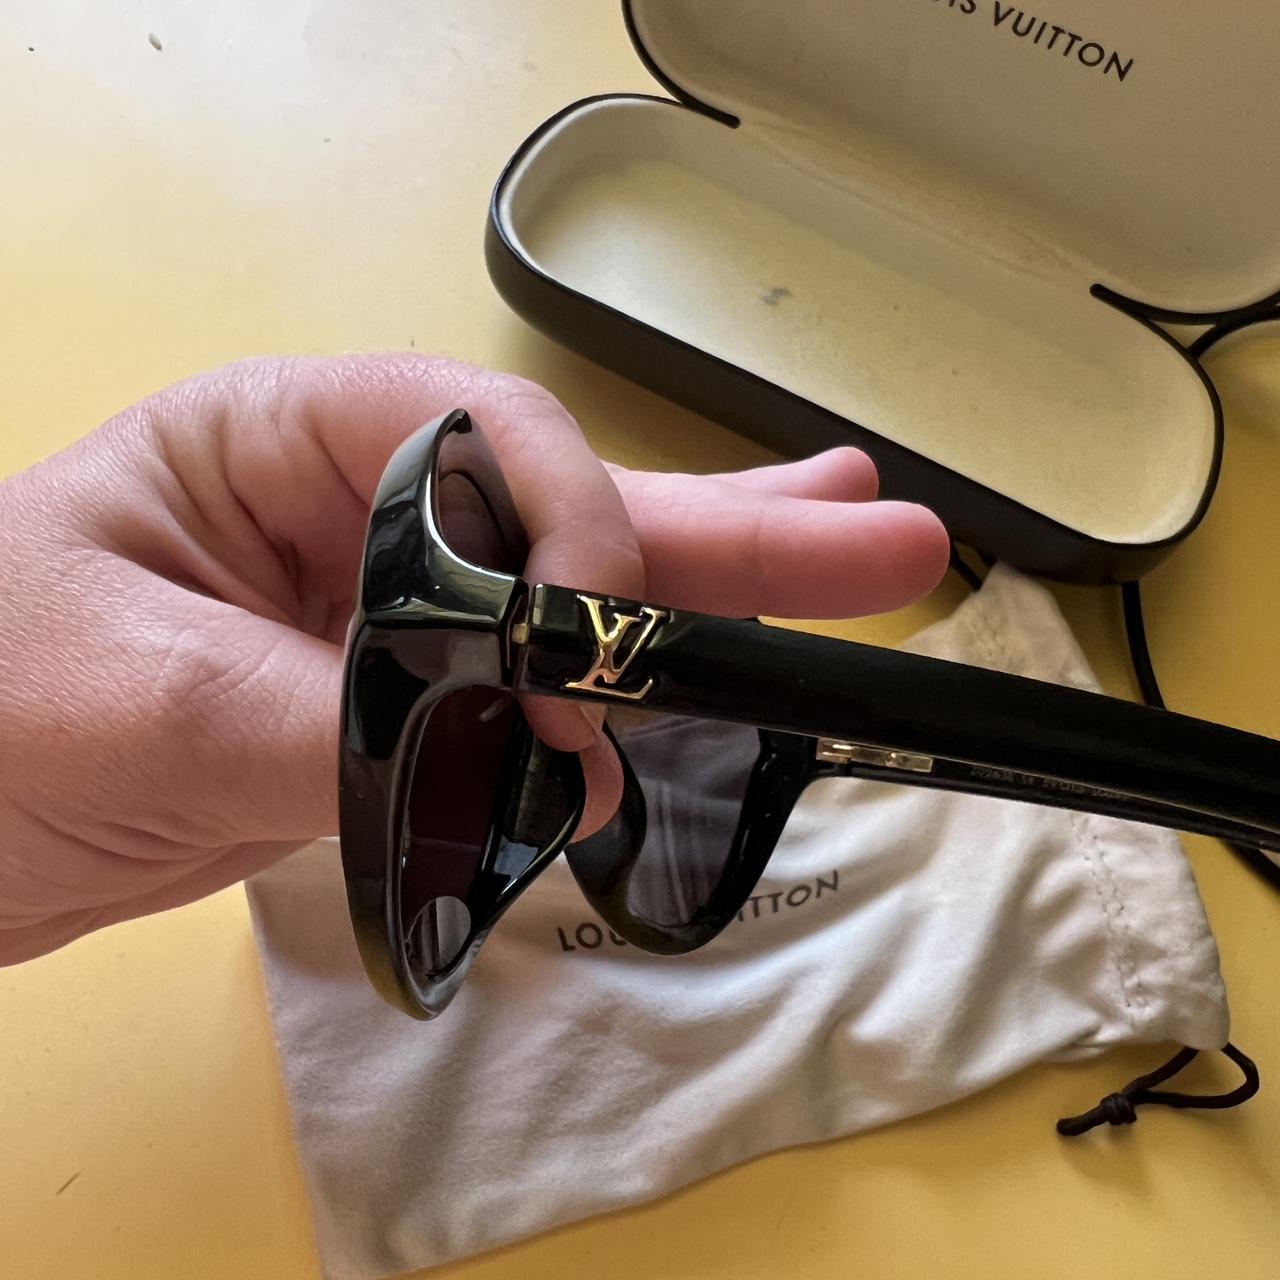 Brand new LV sunglasses 2021. New with original case - Depop